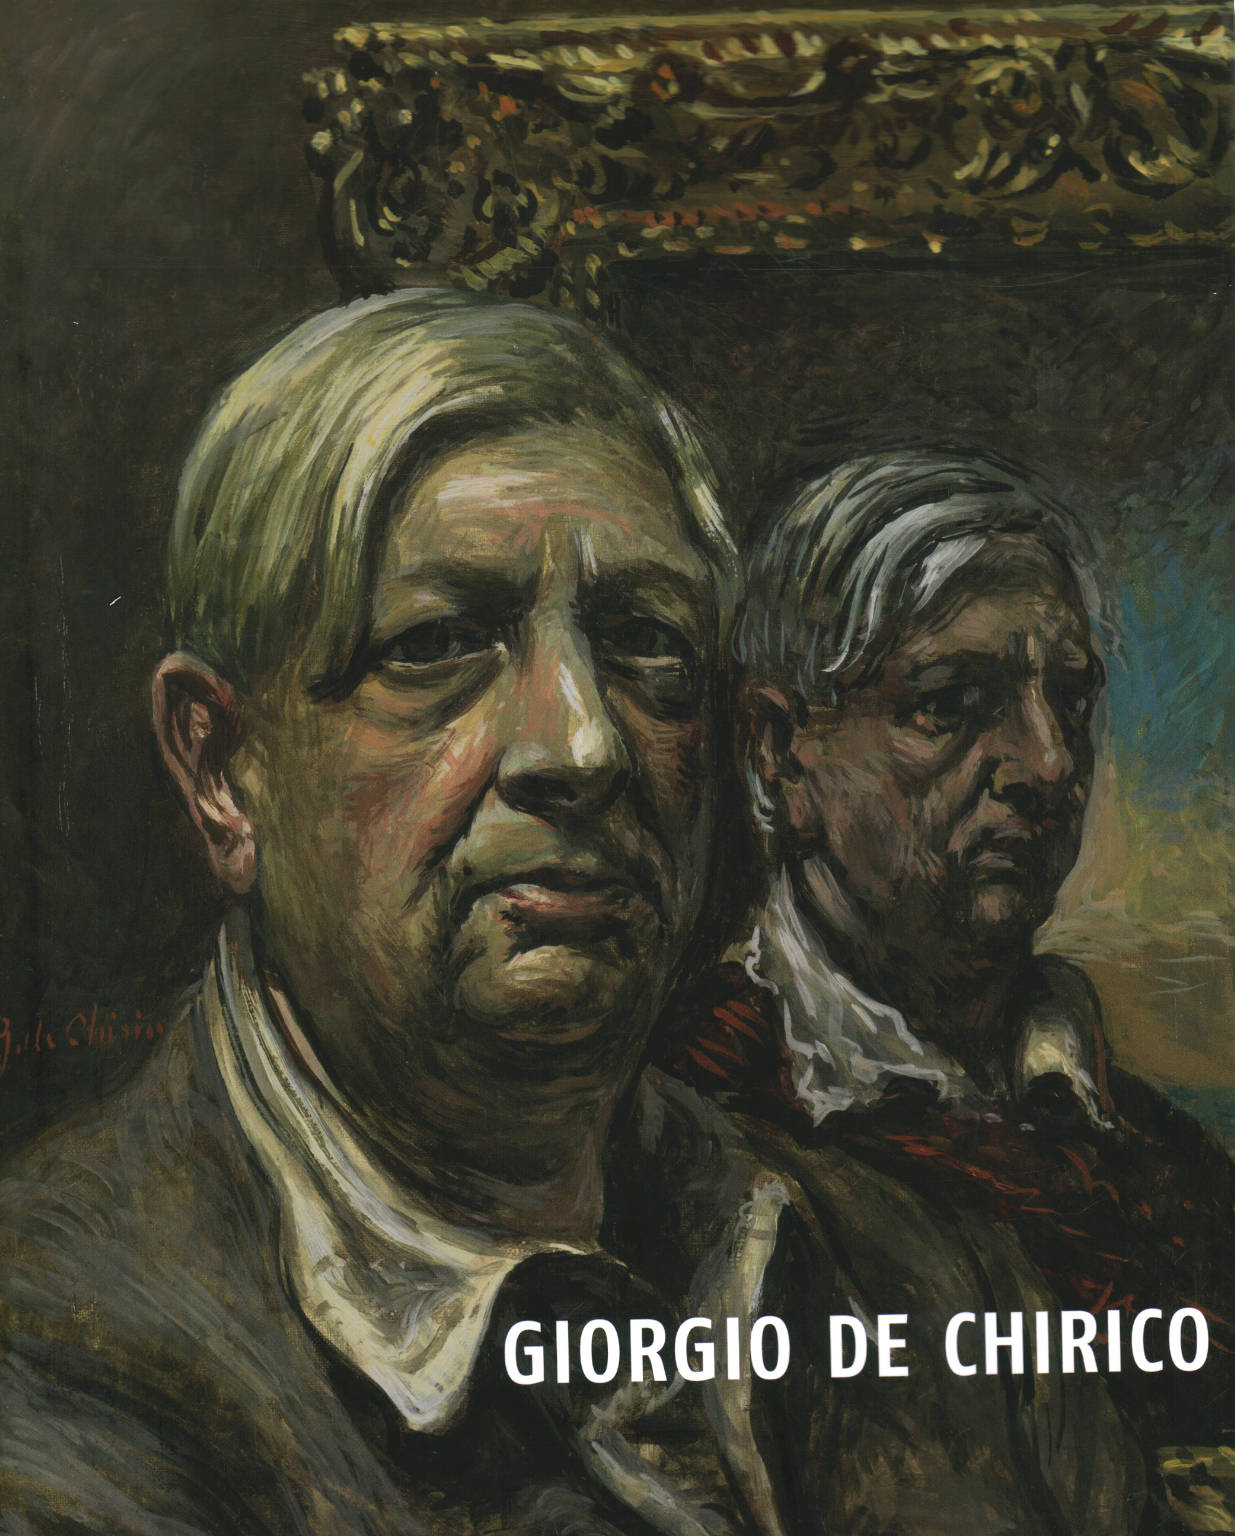 Giorgio de Chirico In Mataphysical Journey, Giorgio de Chirico